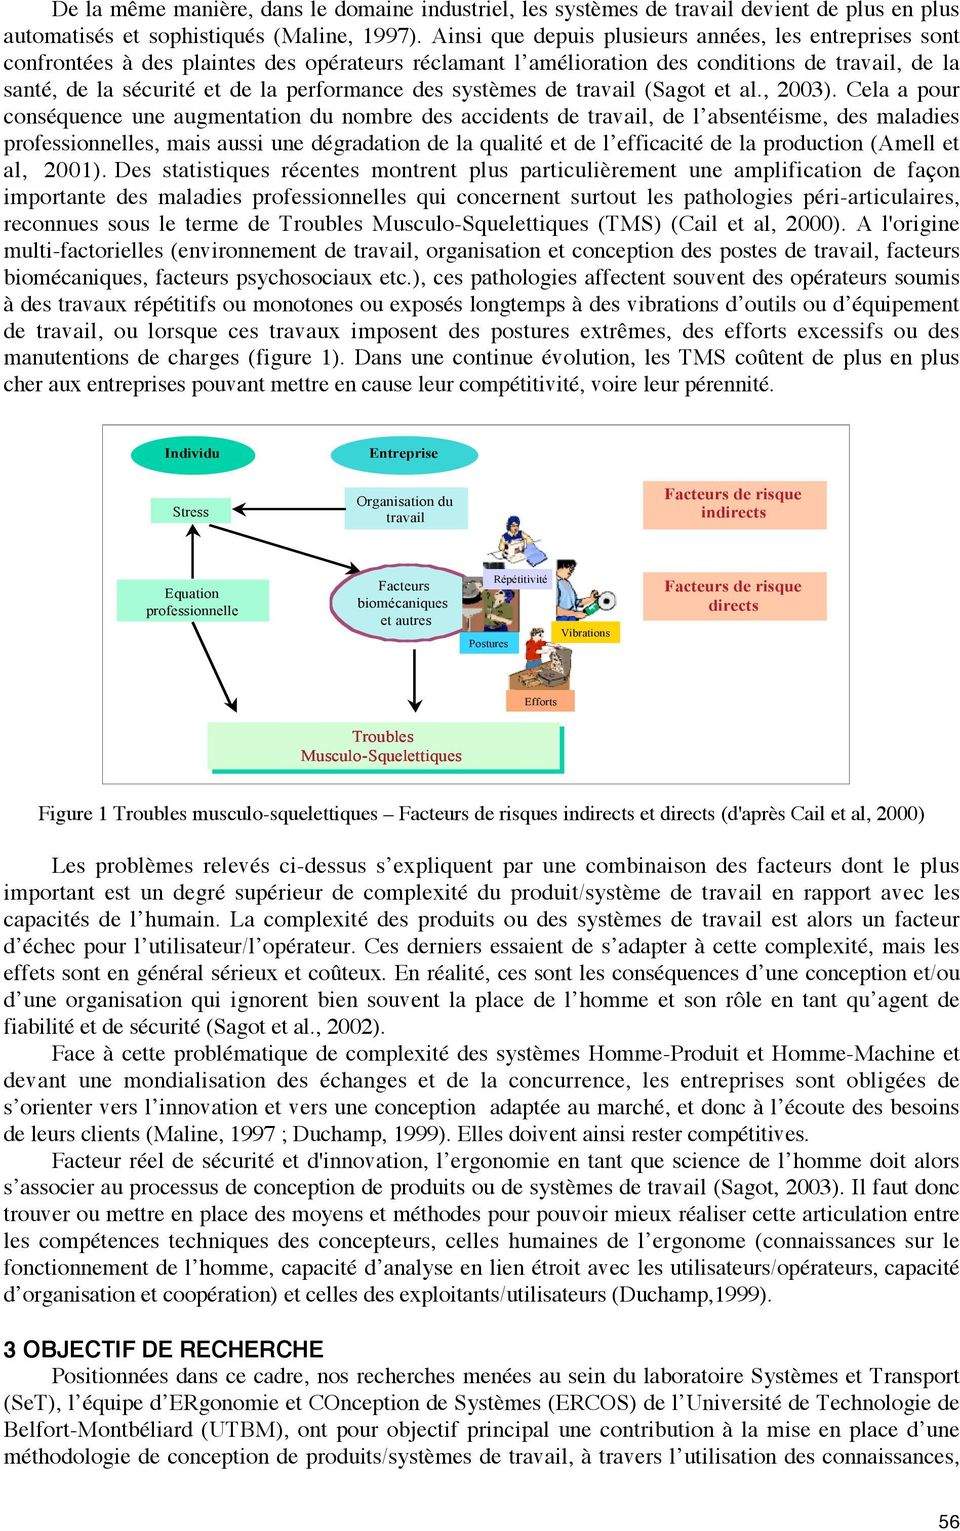 des systèmes de travail (Sagot et al., 2003).